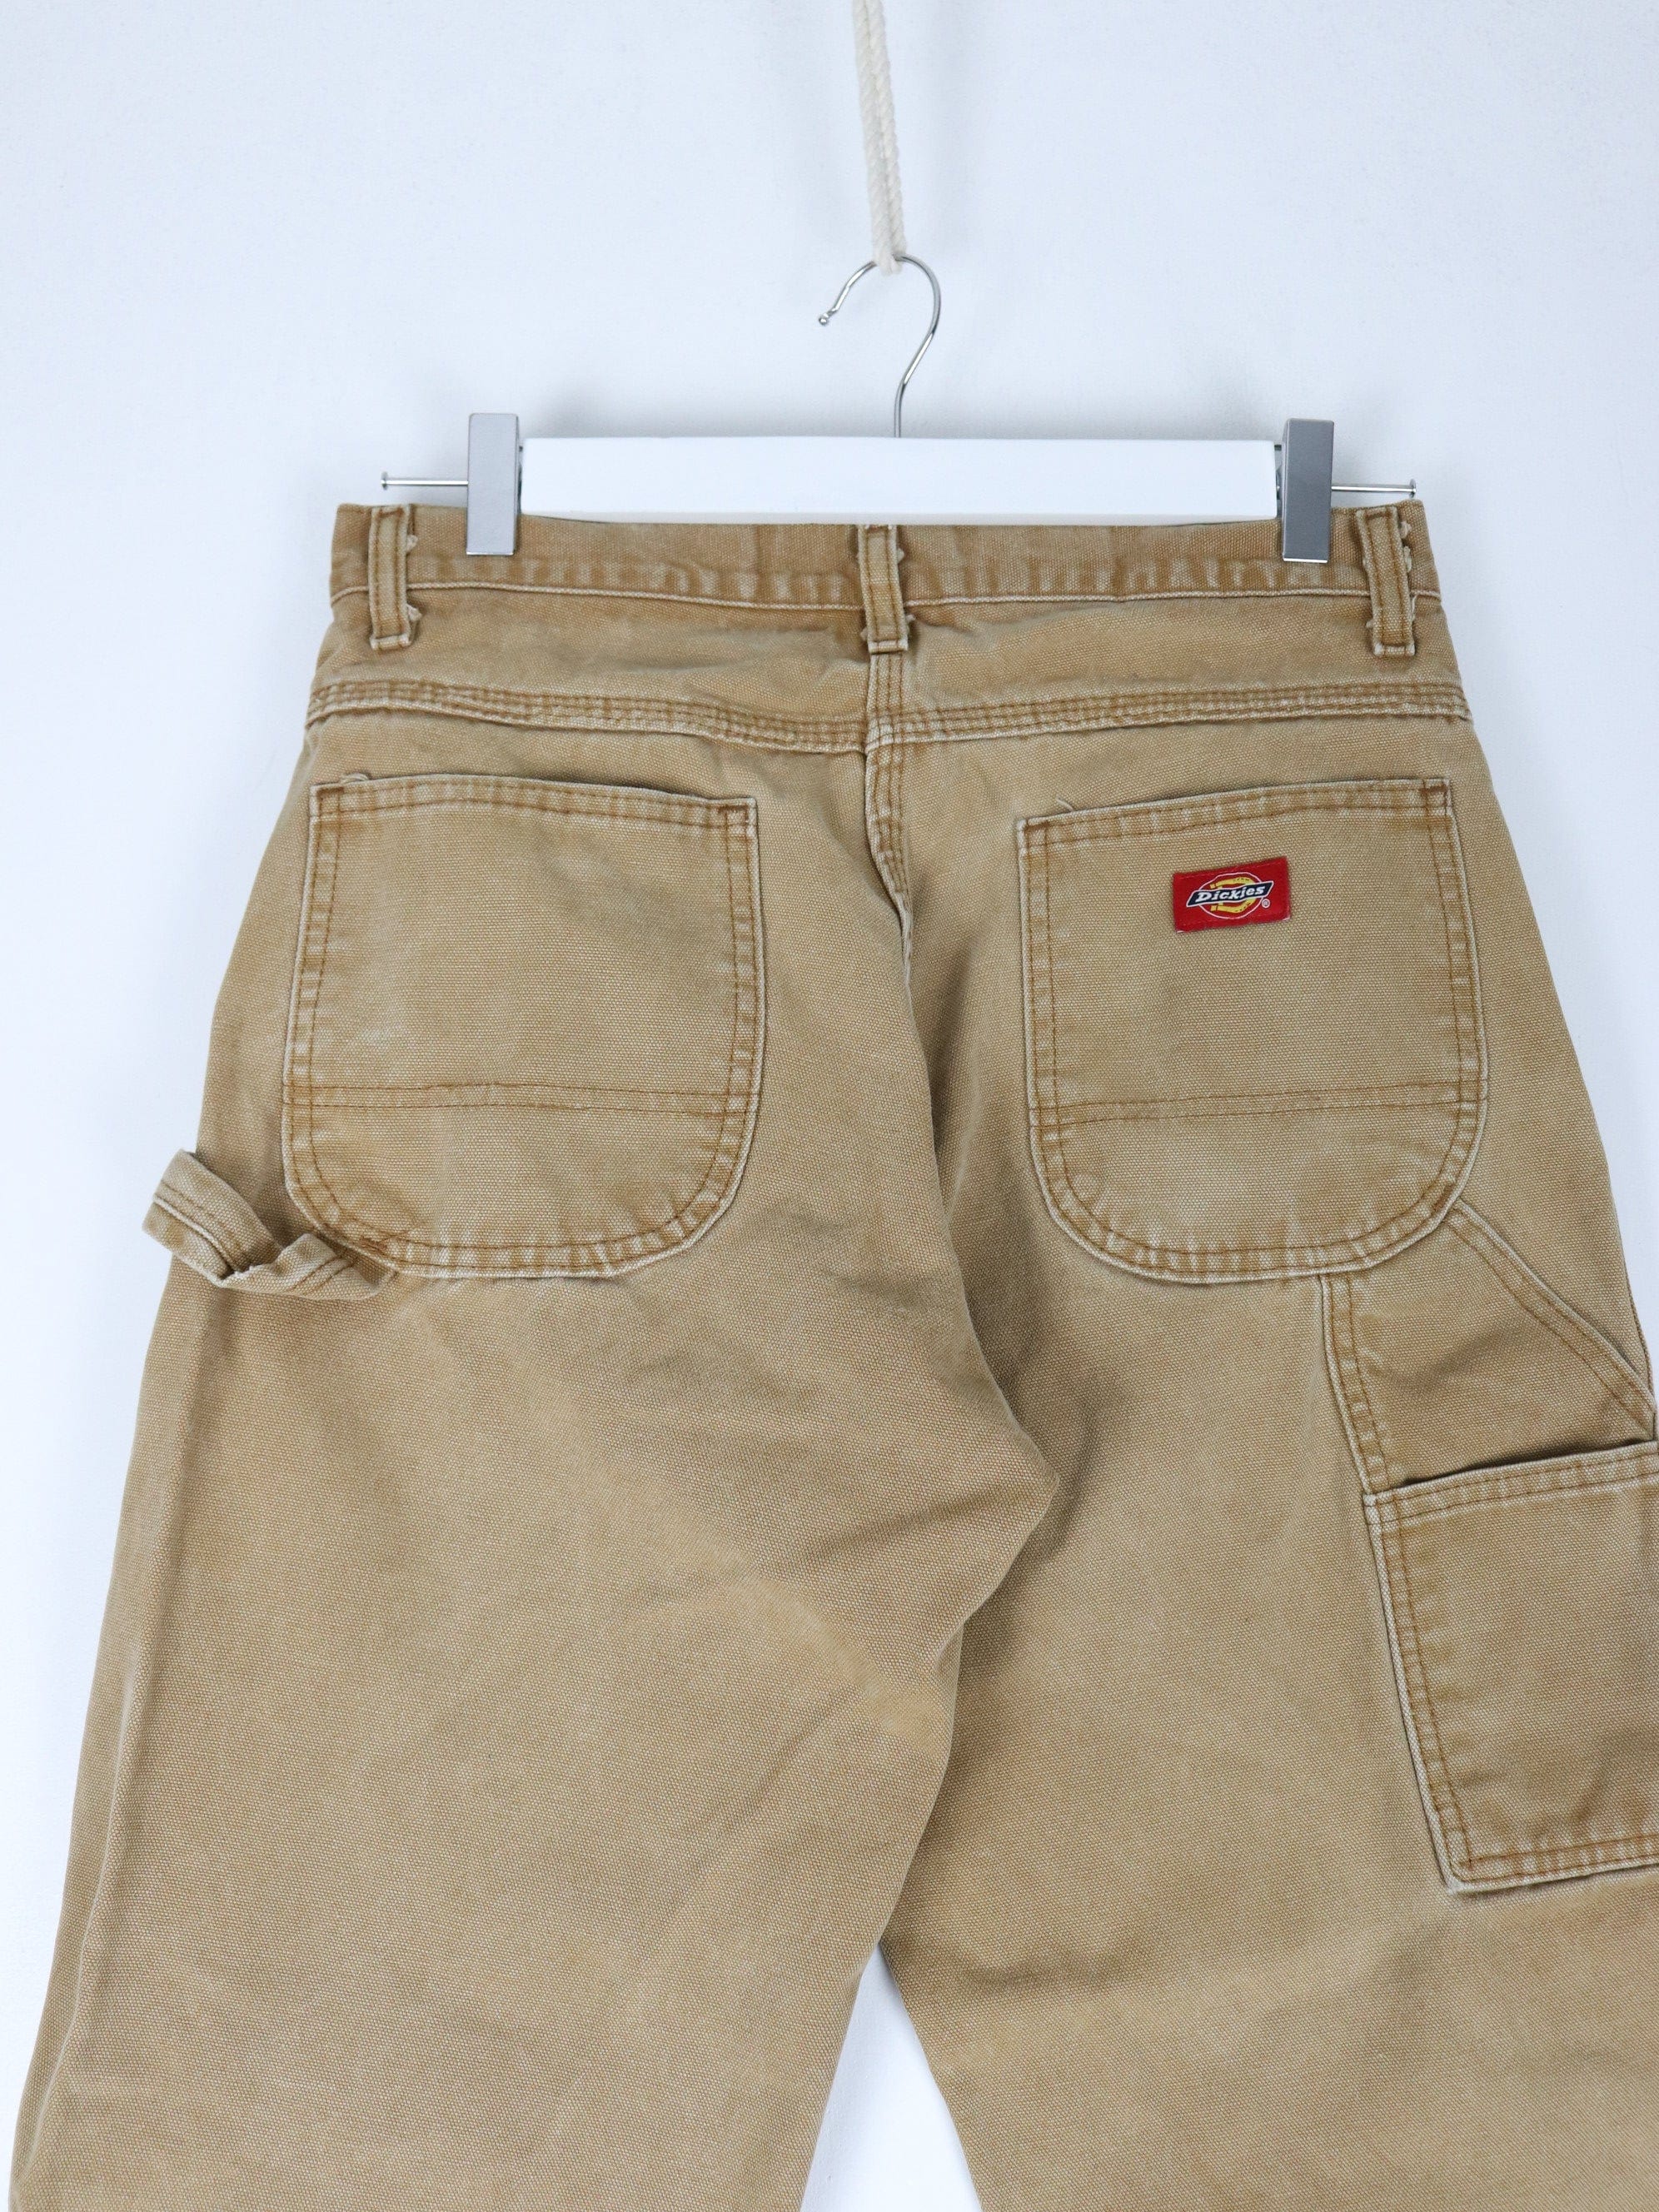 Vintage Dickies Pants Mens 30 x 30 Brown Work Wear Carpenters